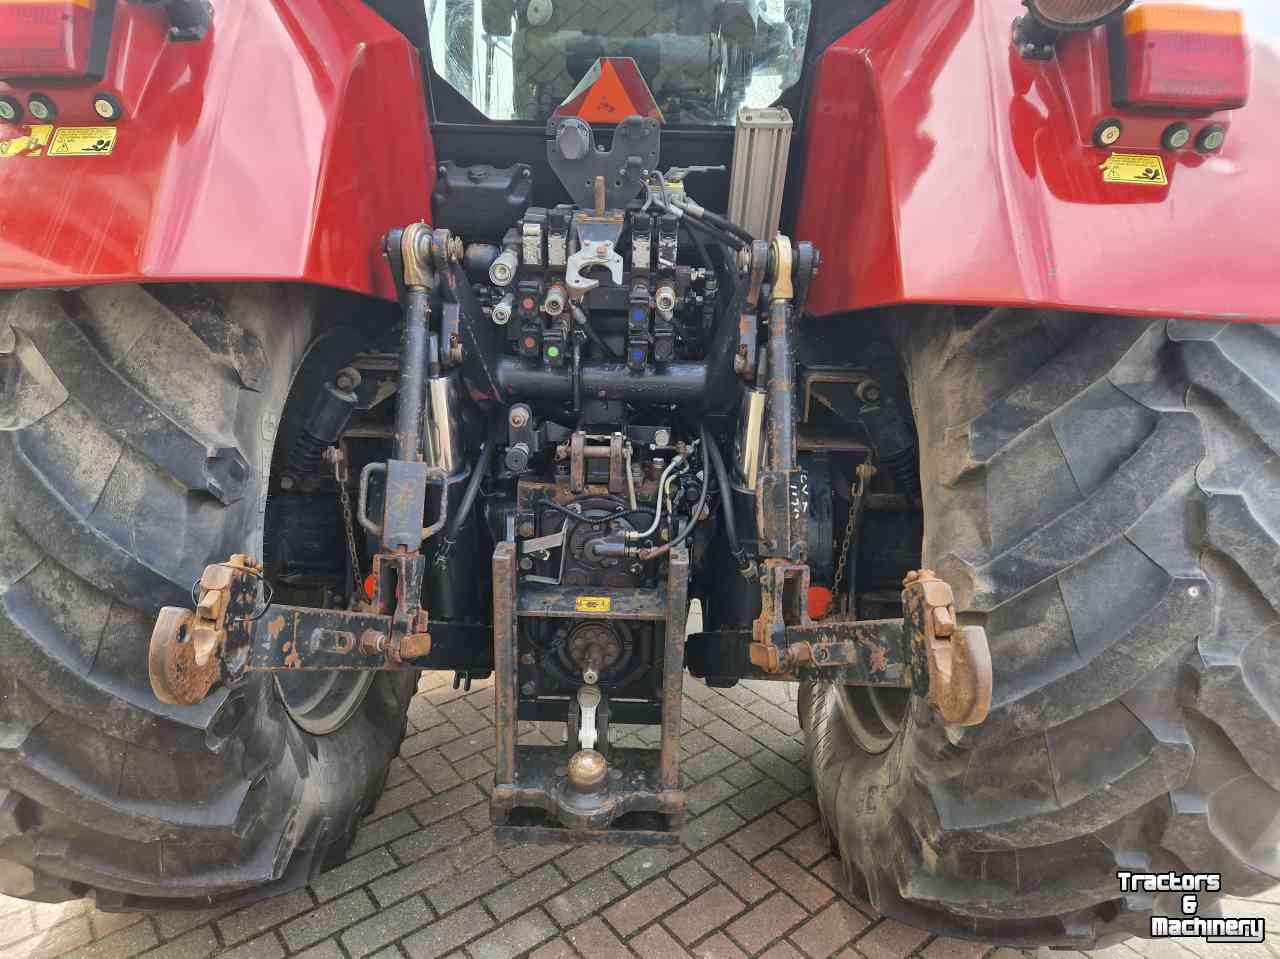 Schlepper / Traktoren Case-IH CVX 1170